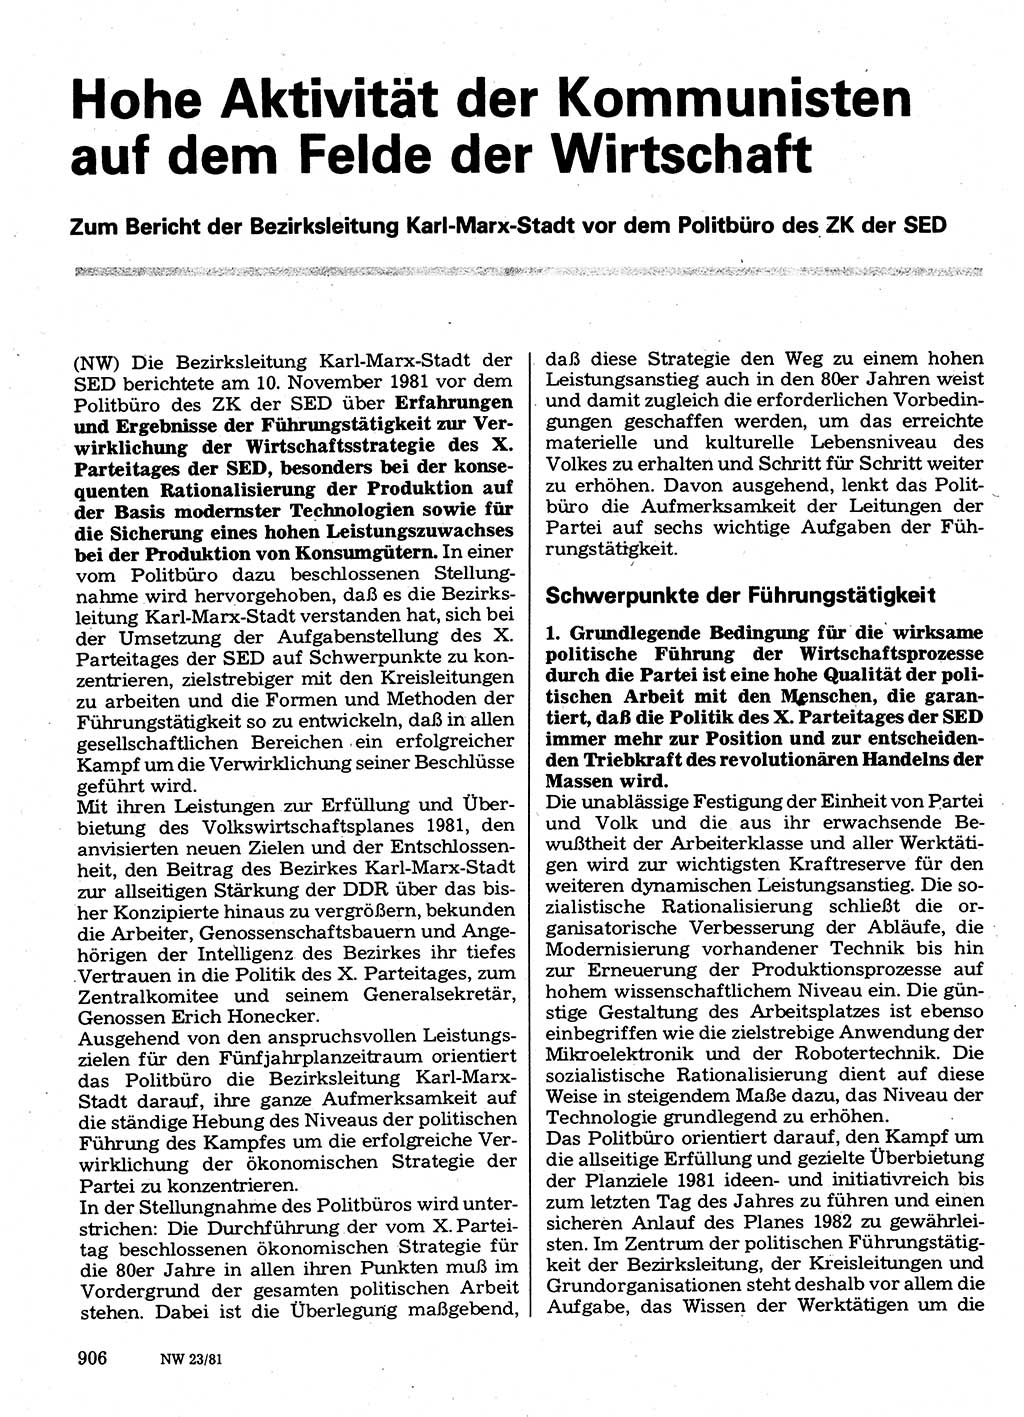 Neuer Weg (NW), Organ des Zentralkomitees (ZK) der SED (Sozialistische Einheitspartei Deutschlands) für Fragen des Parteilebens, 36. Jahrgang [Deutsche Demokratische Republik (DDR)] 1981, Seite 906 (NW ZK SED DDR 1981, S. 906)